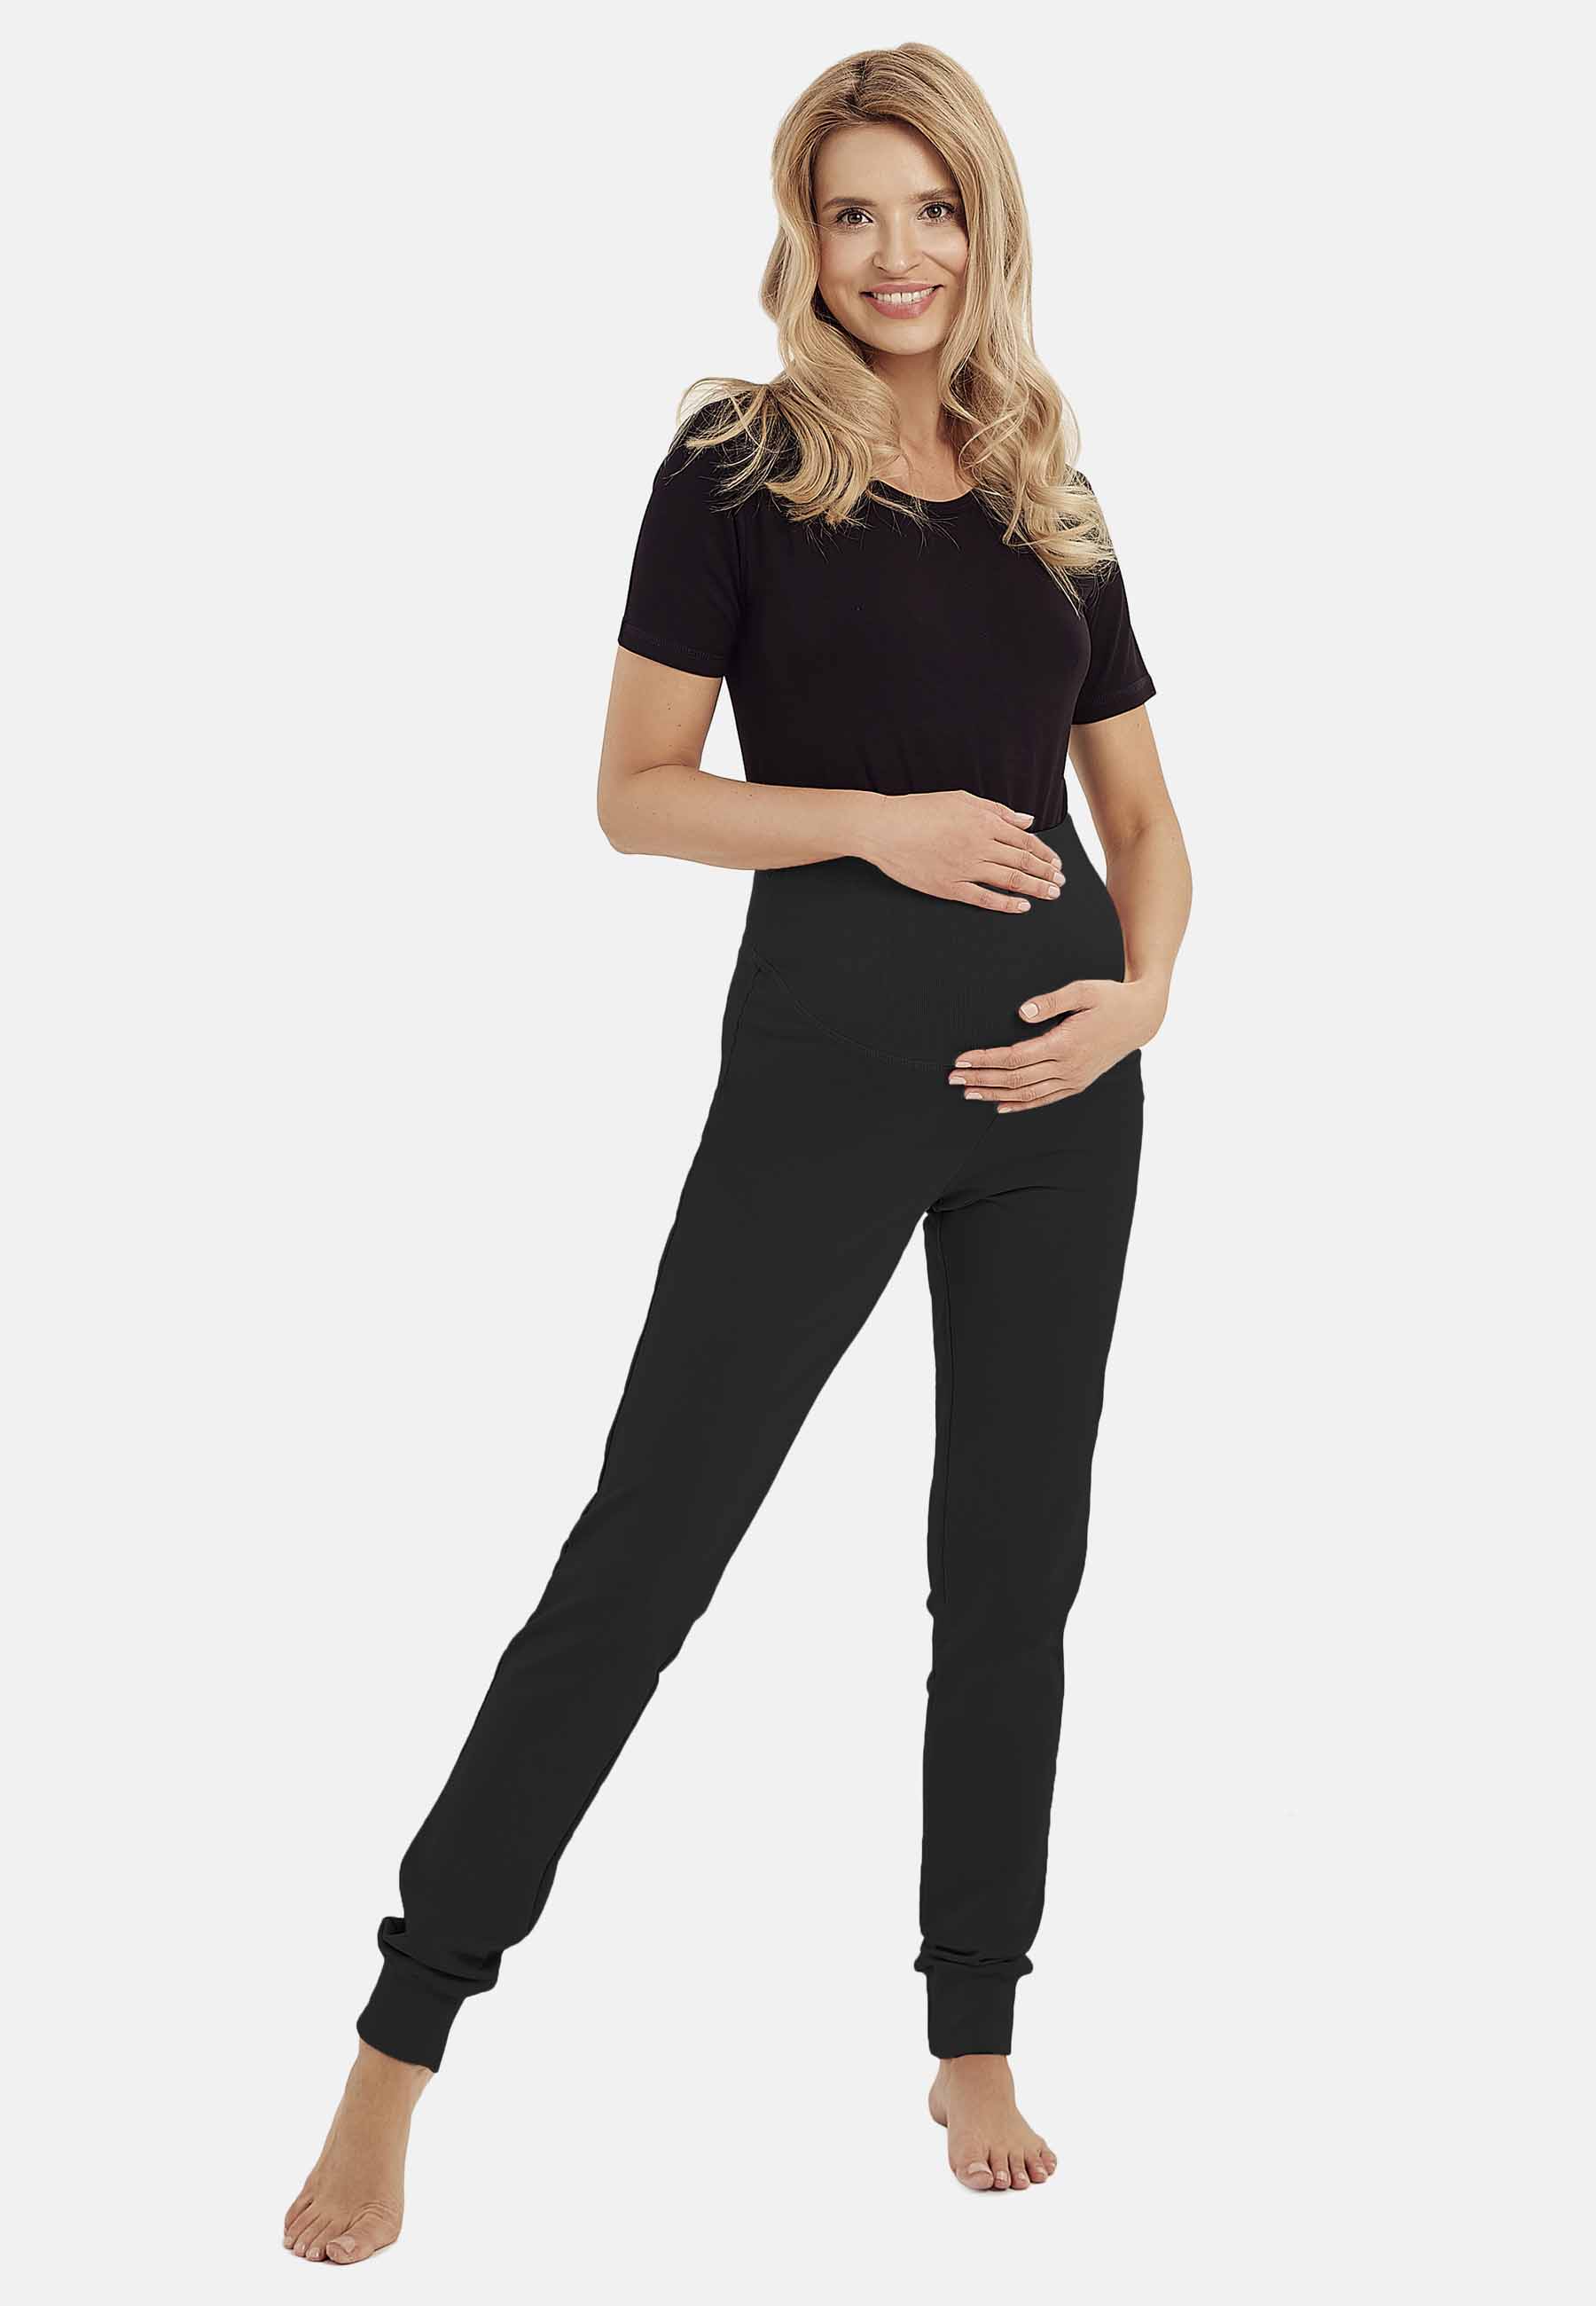 Spodnie damskie ciążowe czarne